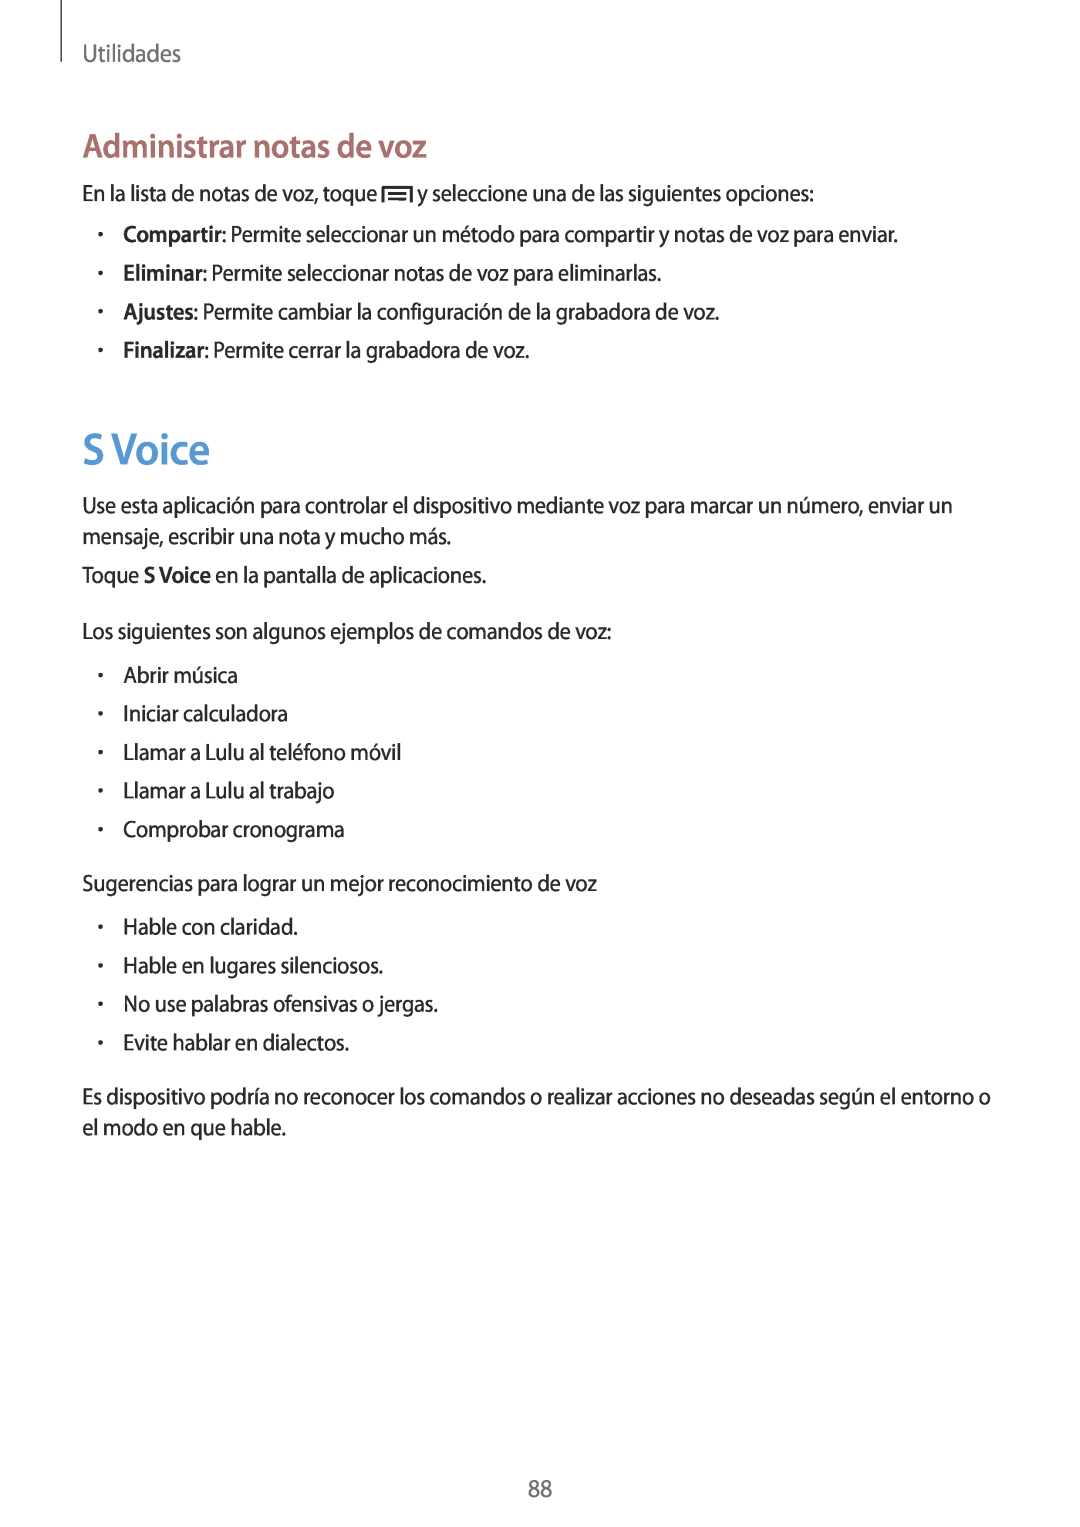 Samsung GT-I9105UANPHE, GT-I9105UANTPH, GT-I9105UANDBT, GT-I9105CWNDBT manual S Voice, Administrar notas de voz, Utilidades 